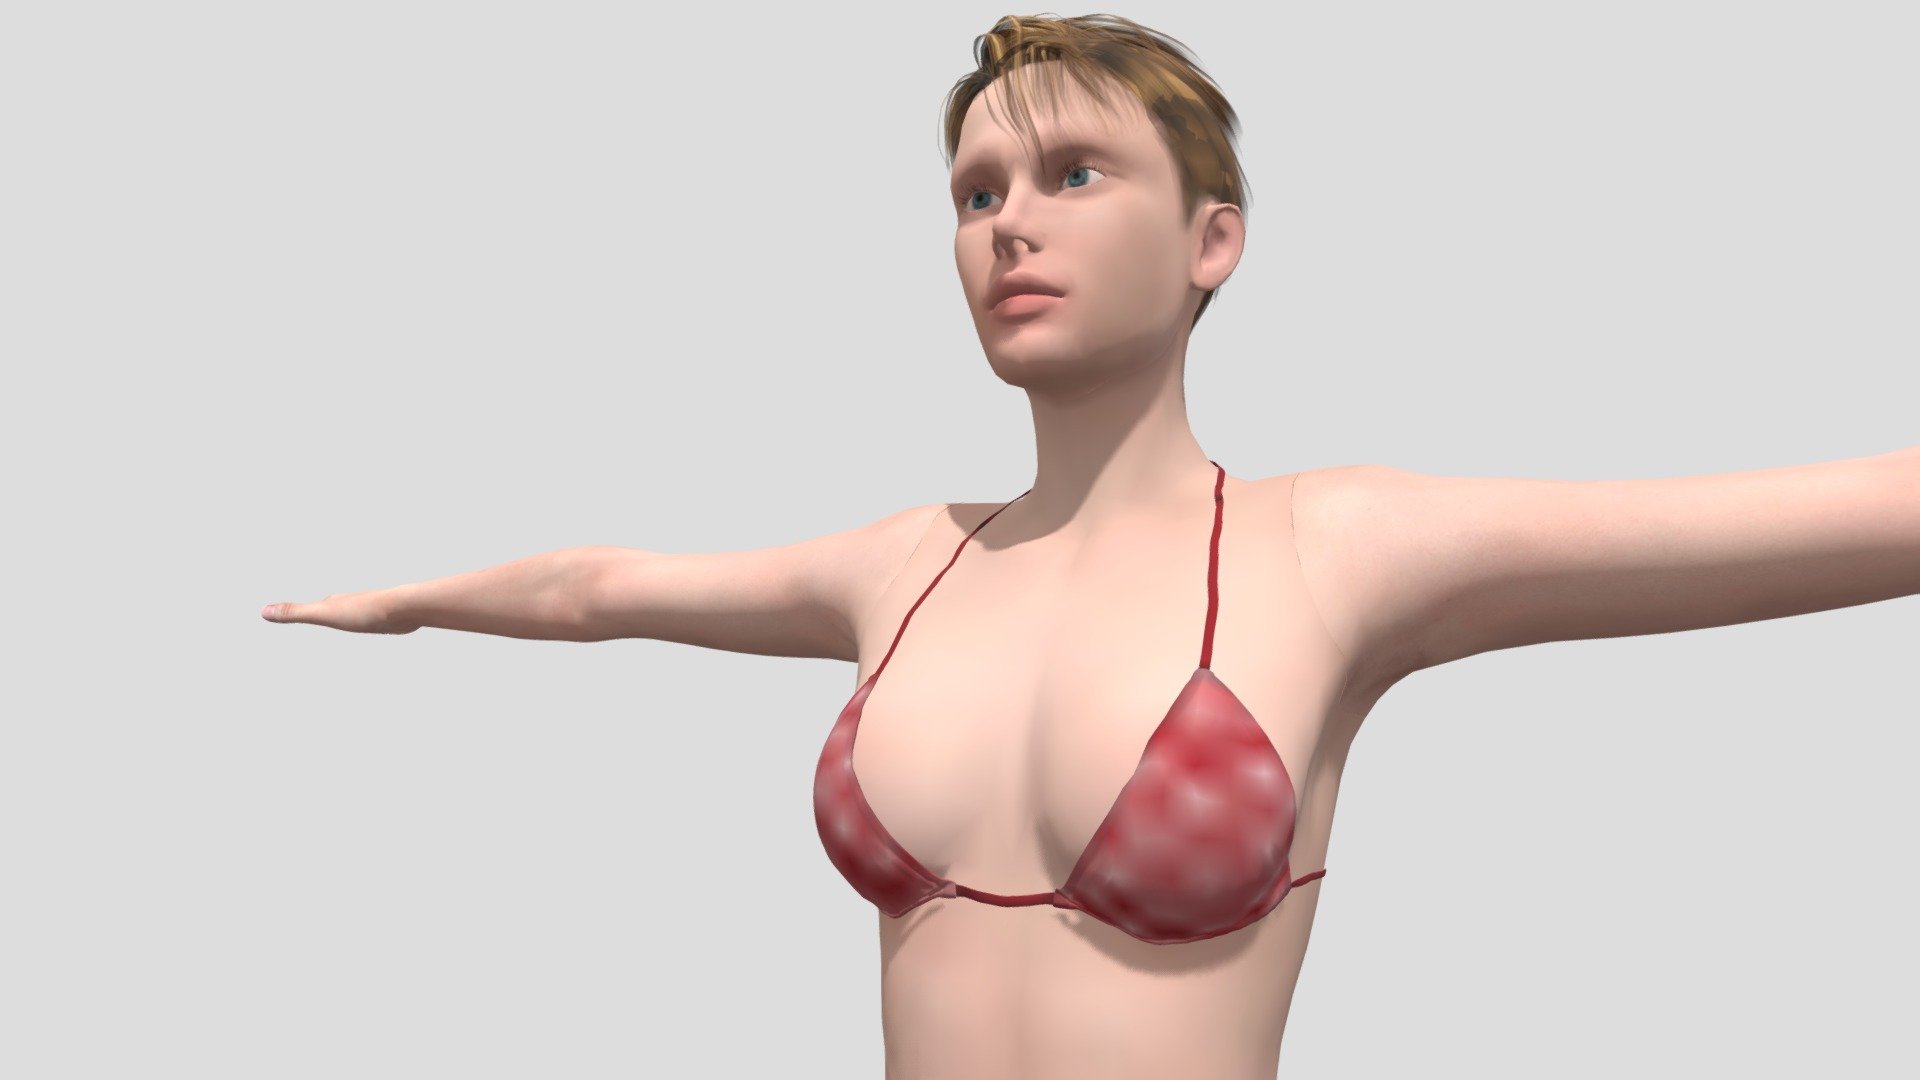 gamela in Bikini
gamela 3D Models Bikini 3D Model - gamela in Bikini - 3D model by dreamvideo21 3d model